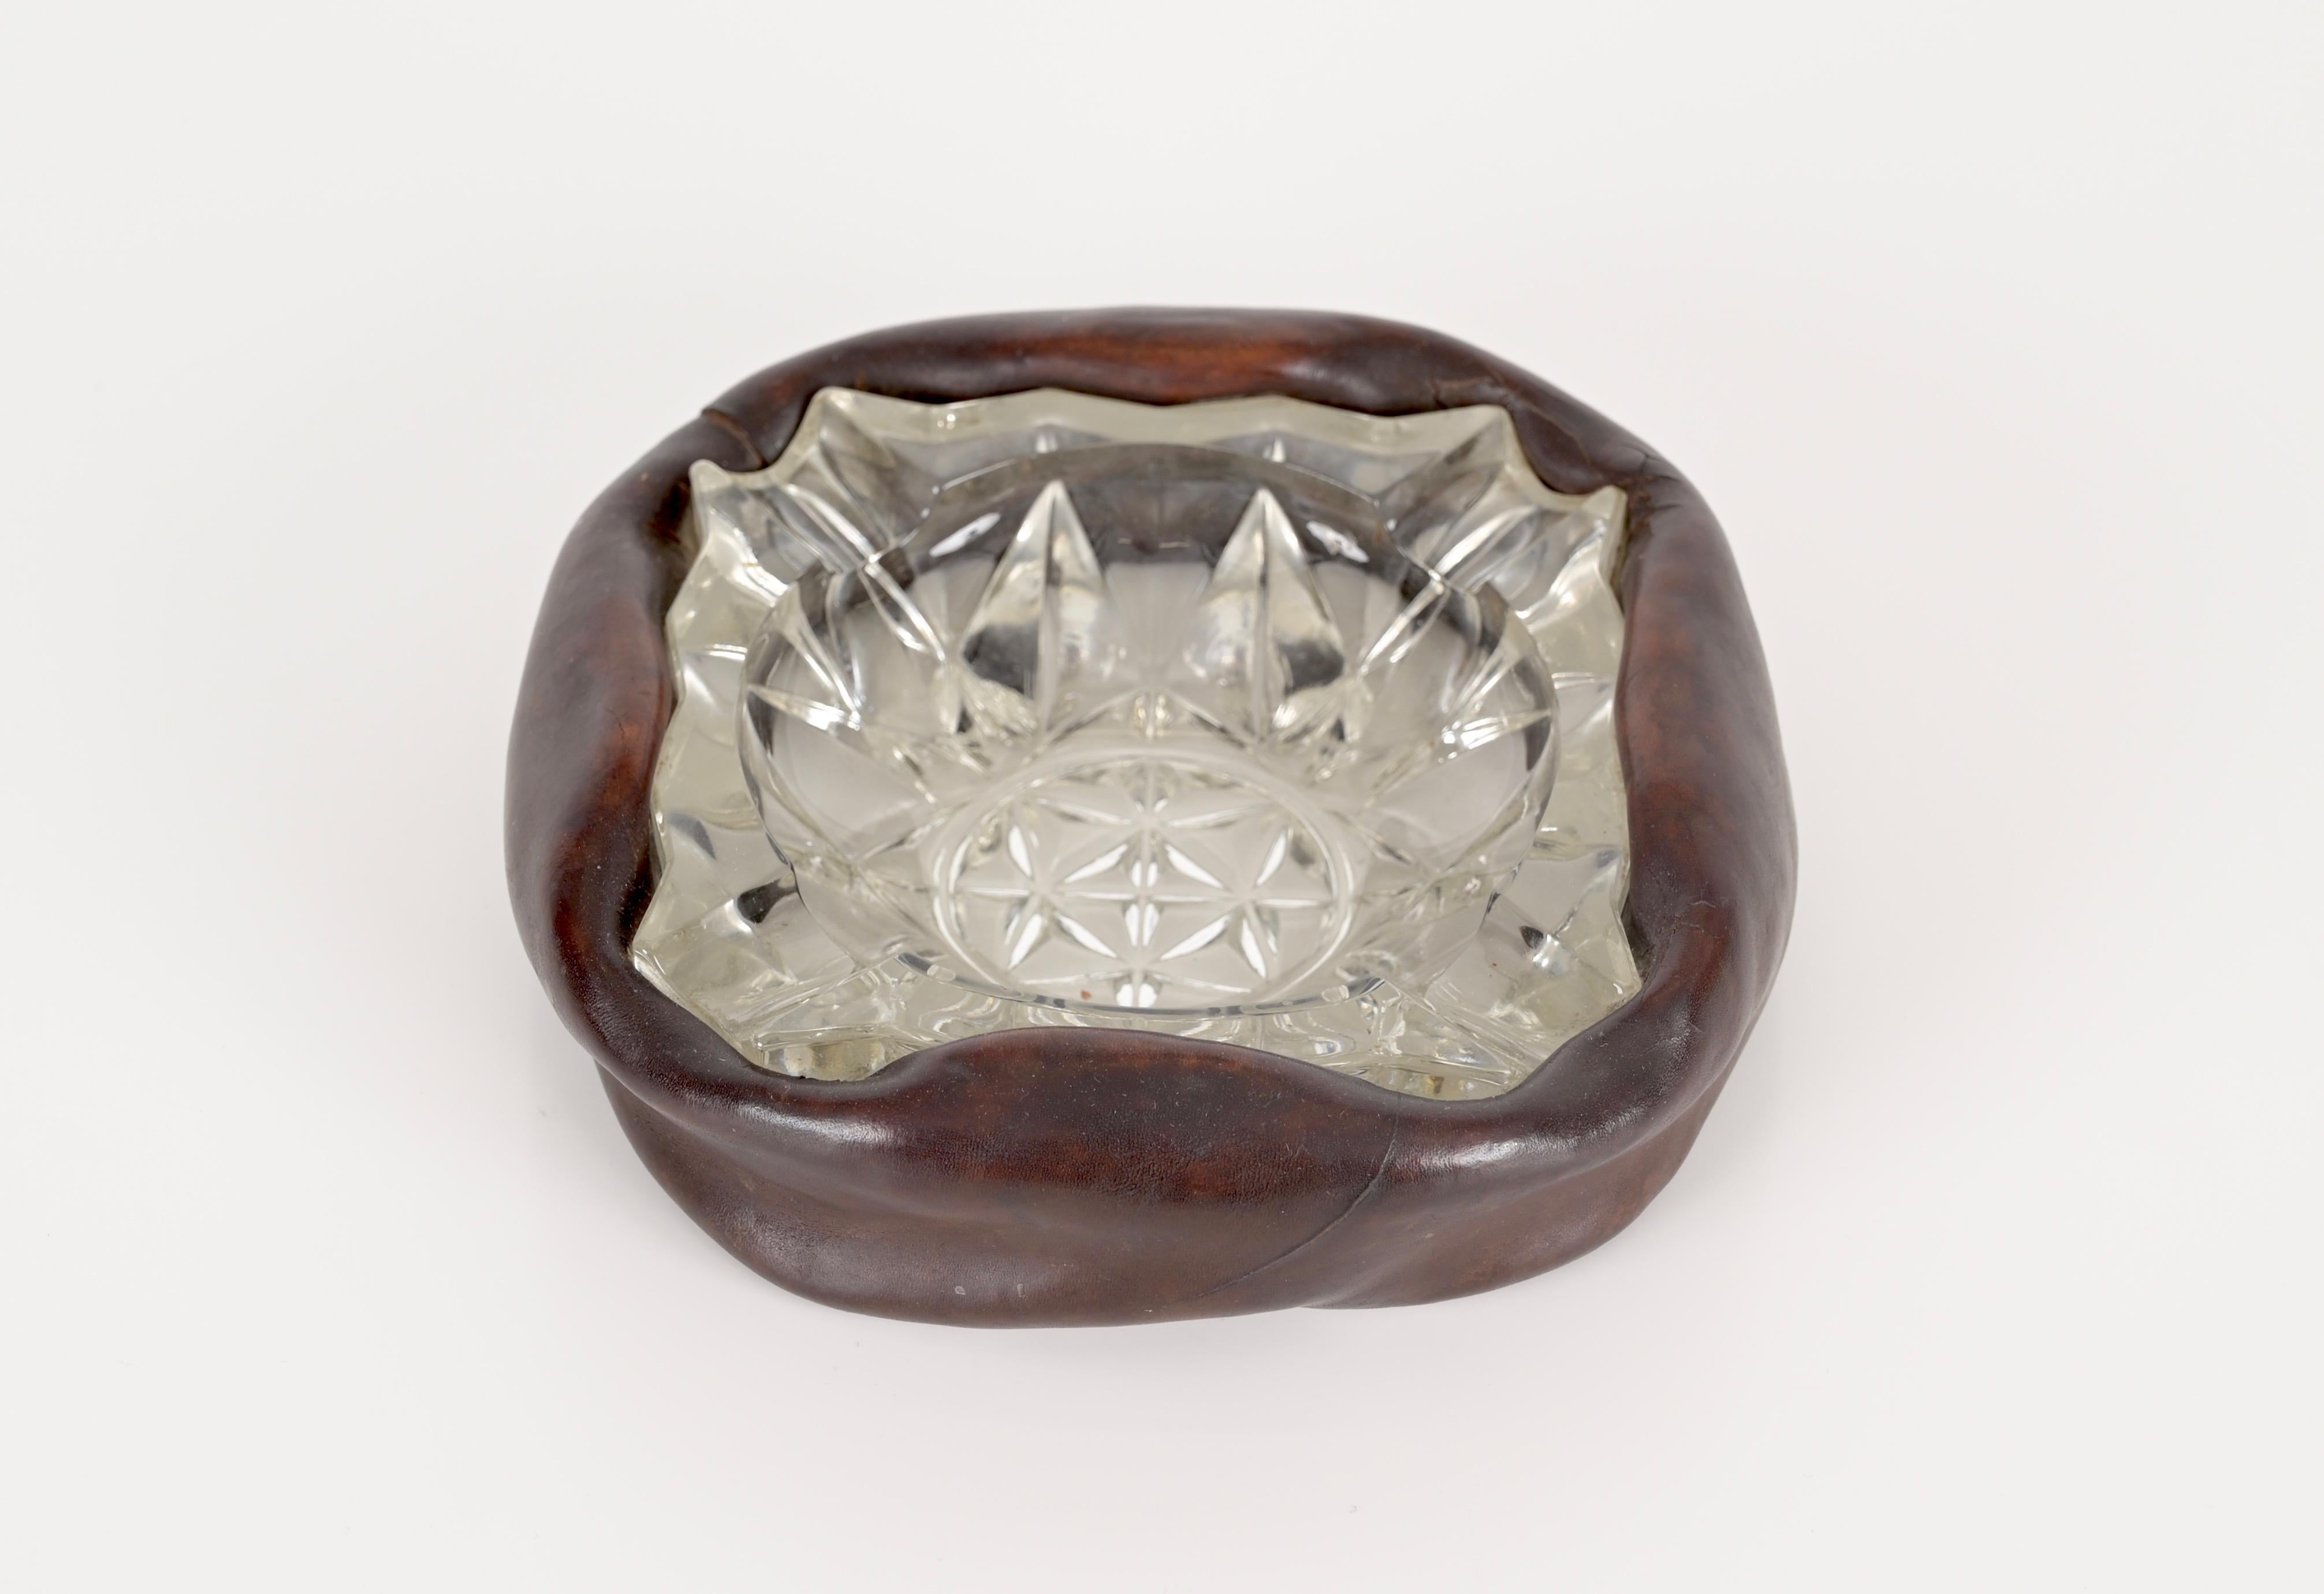 Hervorragender Aschenbecher mit einem gebogenen Lederrahmen und geschliffenem Kristallglas. Dieses fantastische Stück wird Jacques Adnet zugeschrieben und wurde in den 1960er Jahren in Frankreich hergestellt.

Dieser charmante Aschenbecher ist in